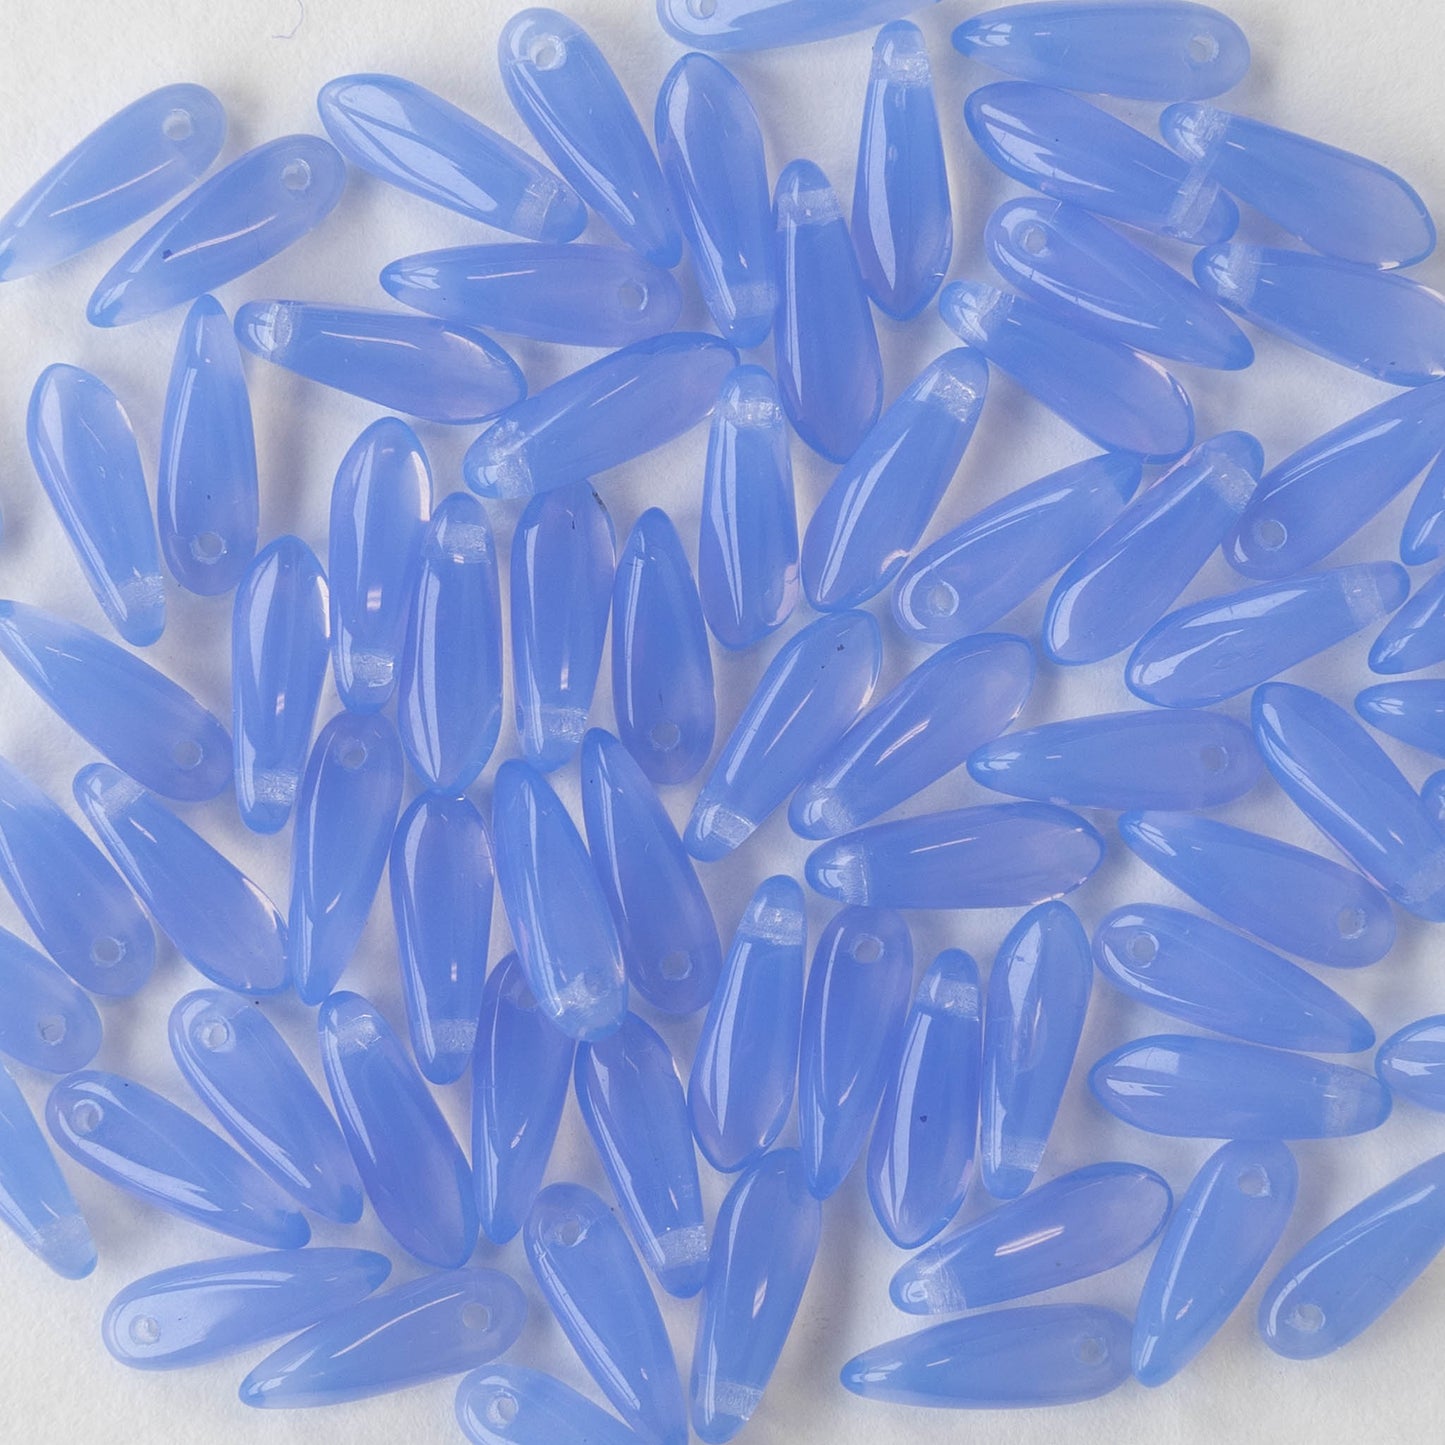 11mm Dagger Beads - Light Blue Opal - 100 beads